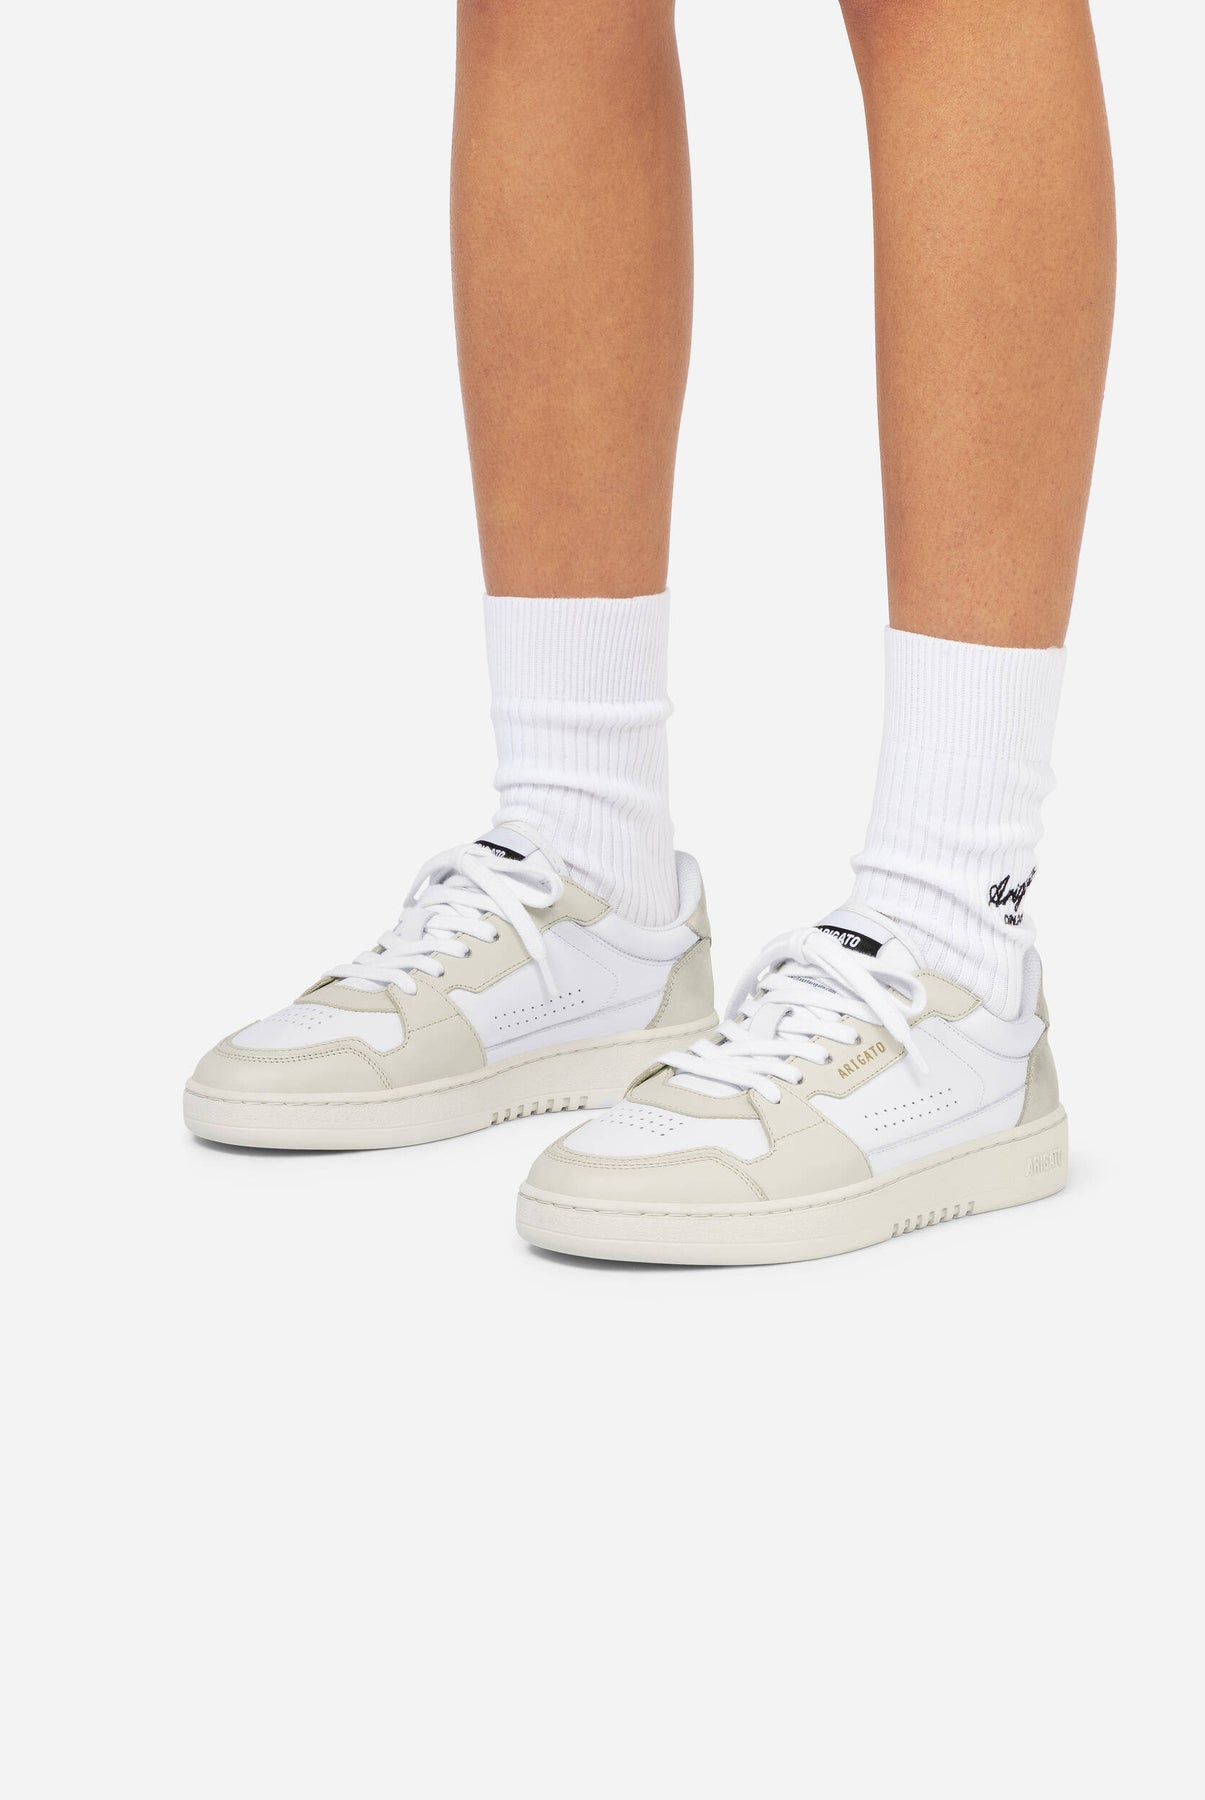 Dice Lo Sneaker - White/Gold